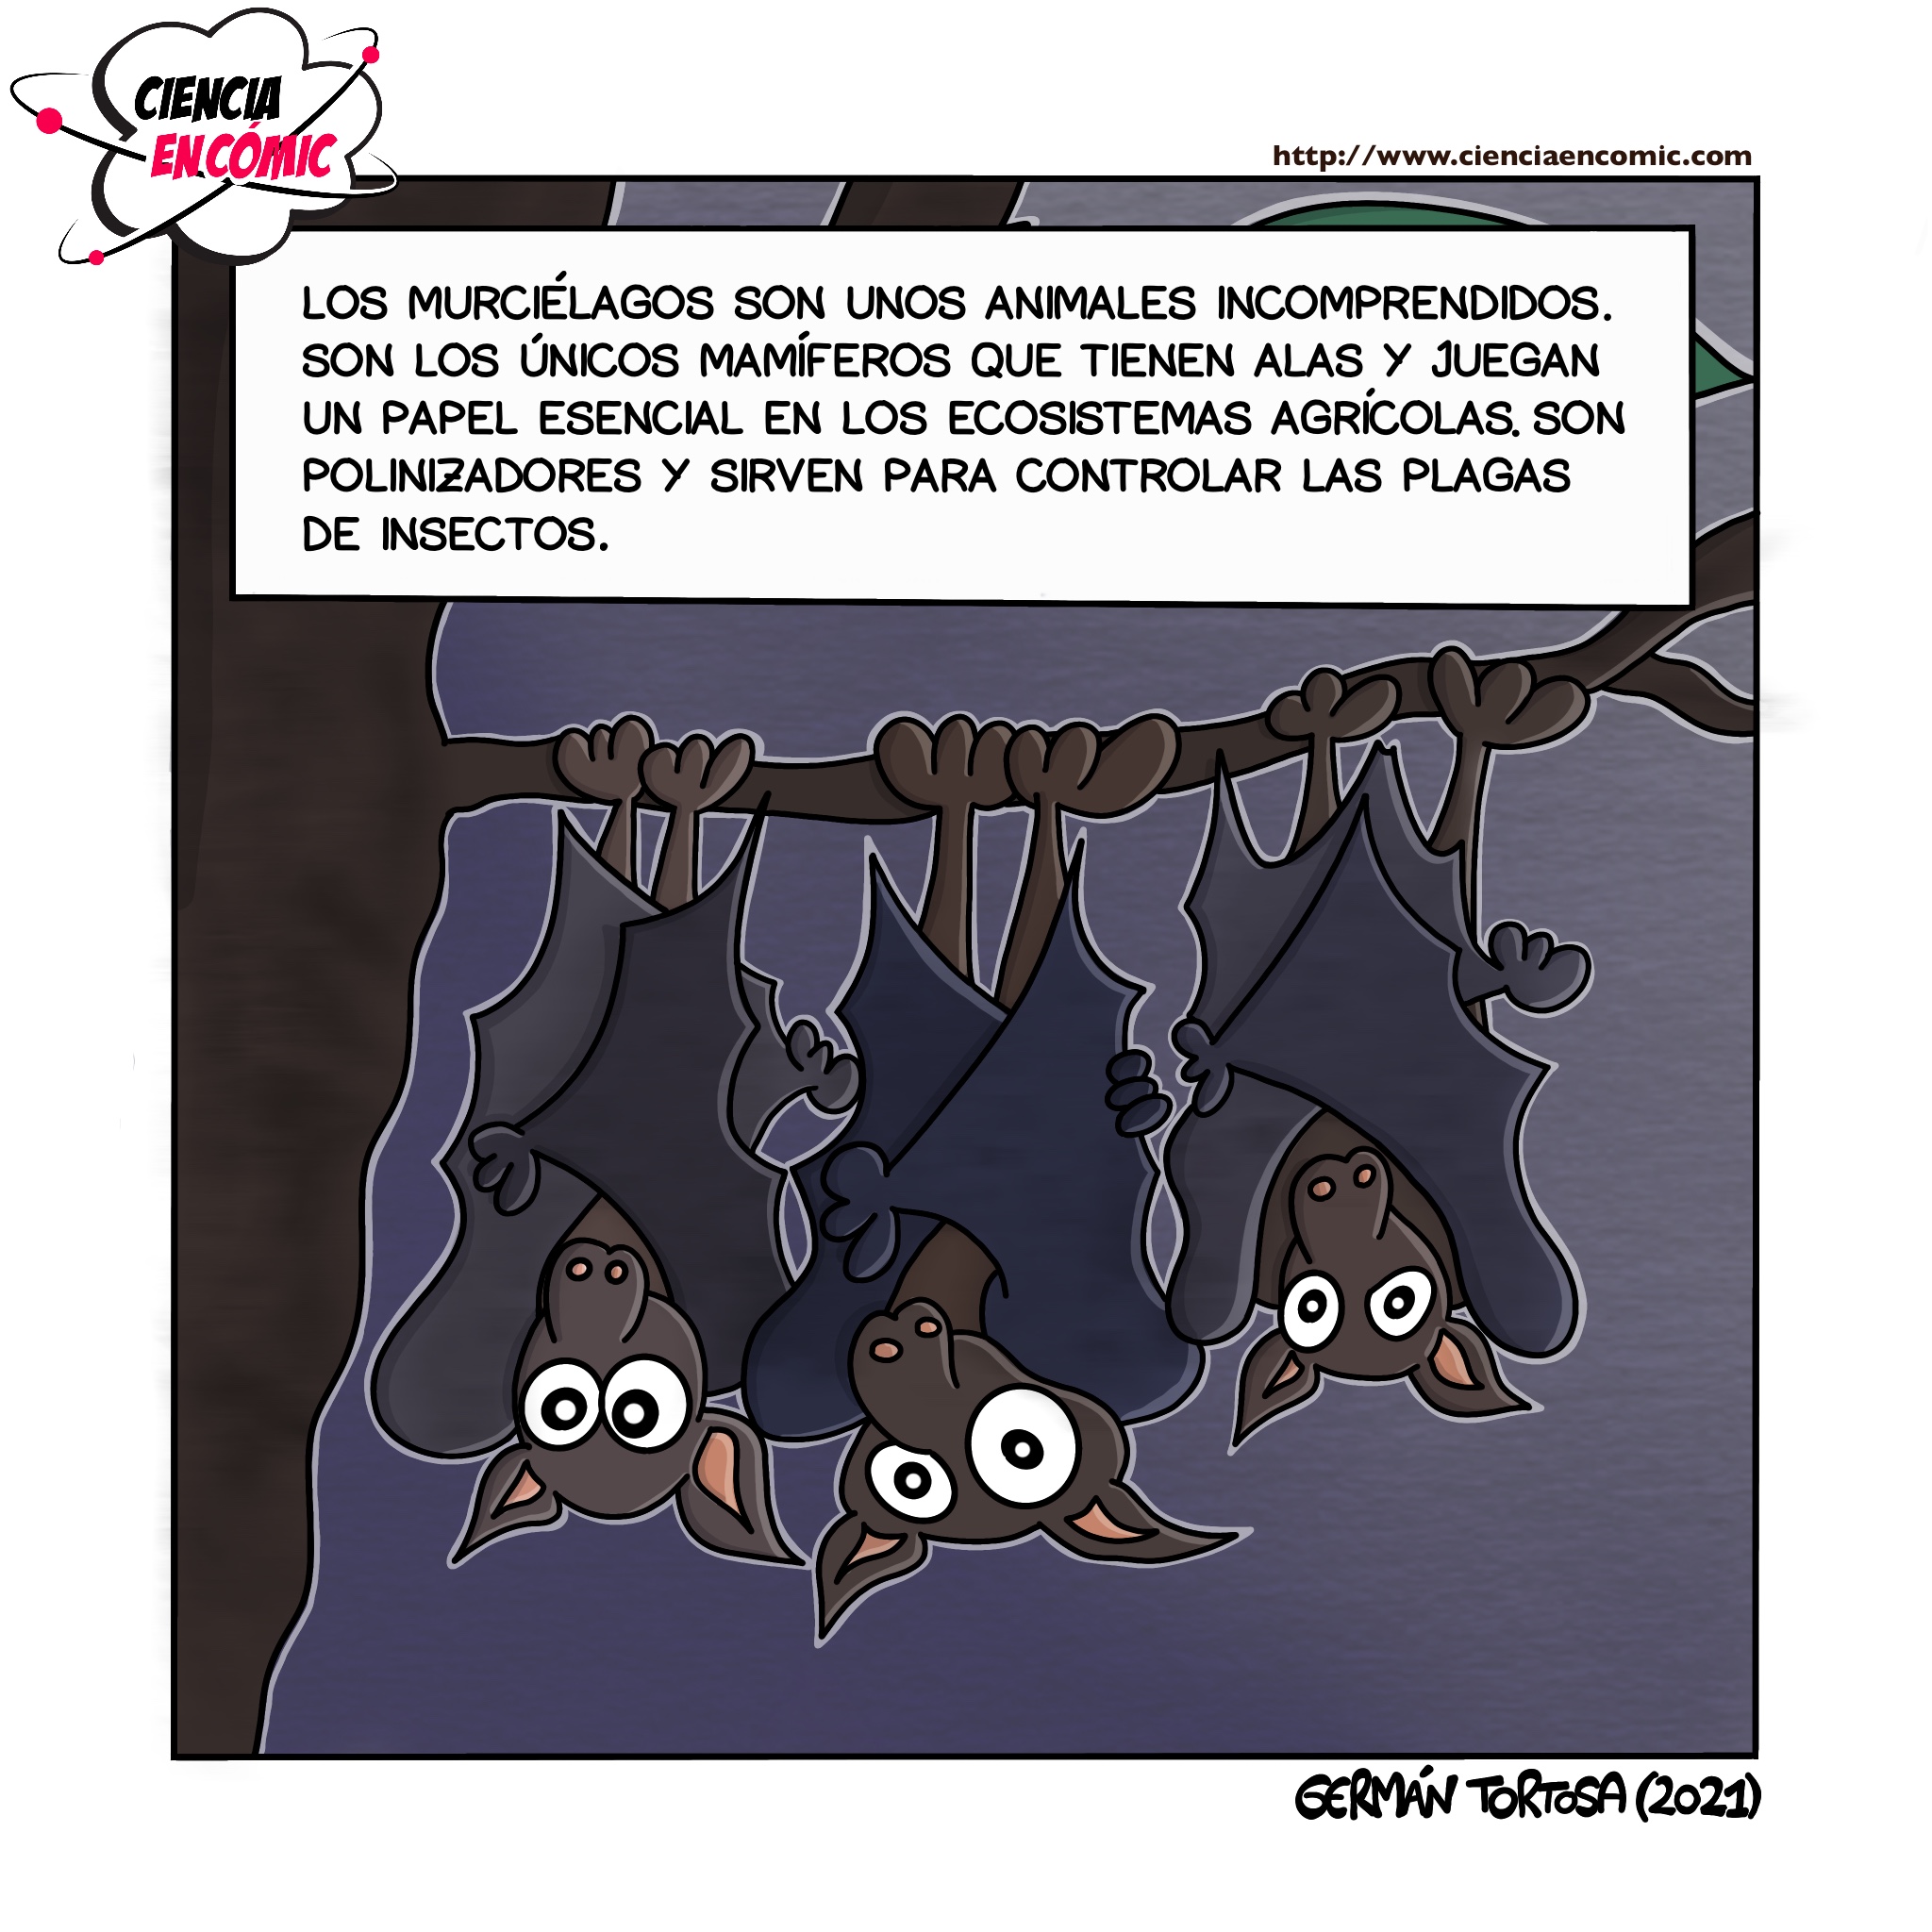 Los murciélagos